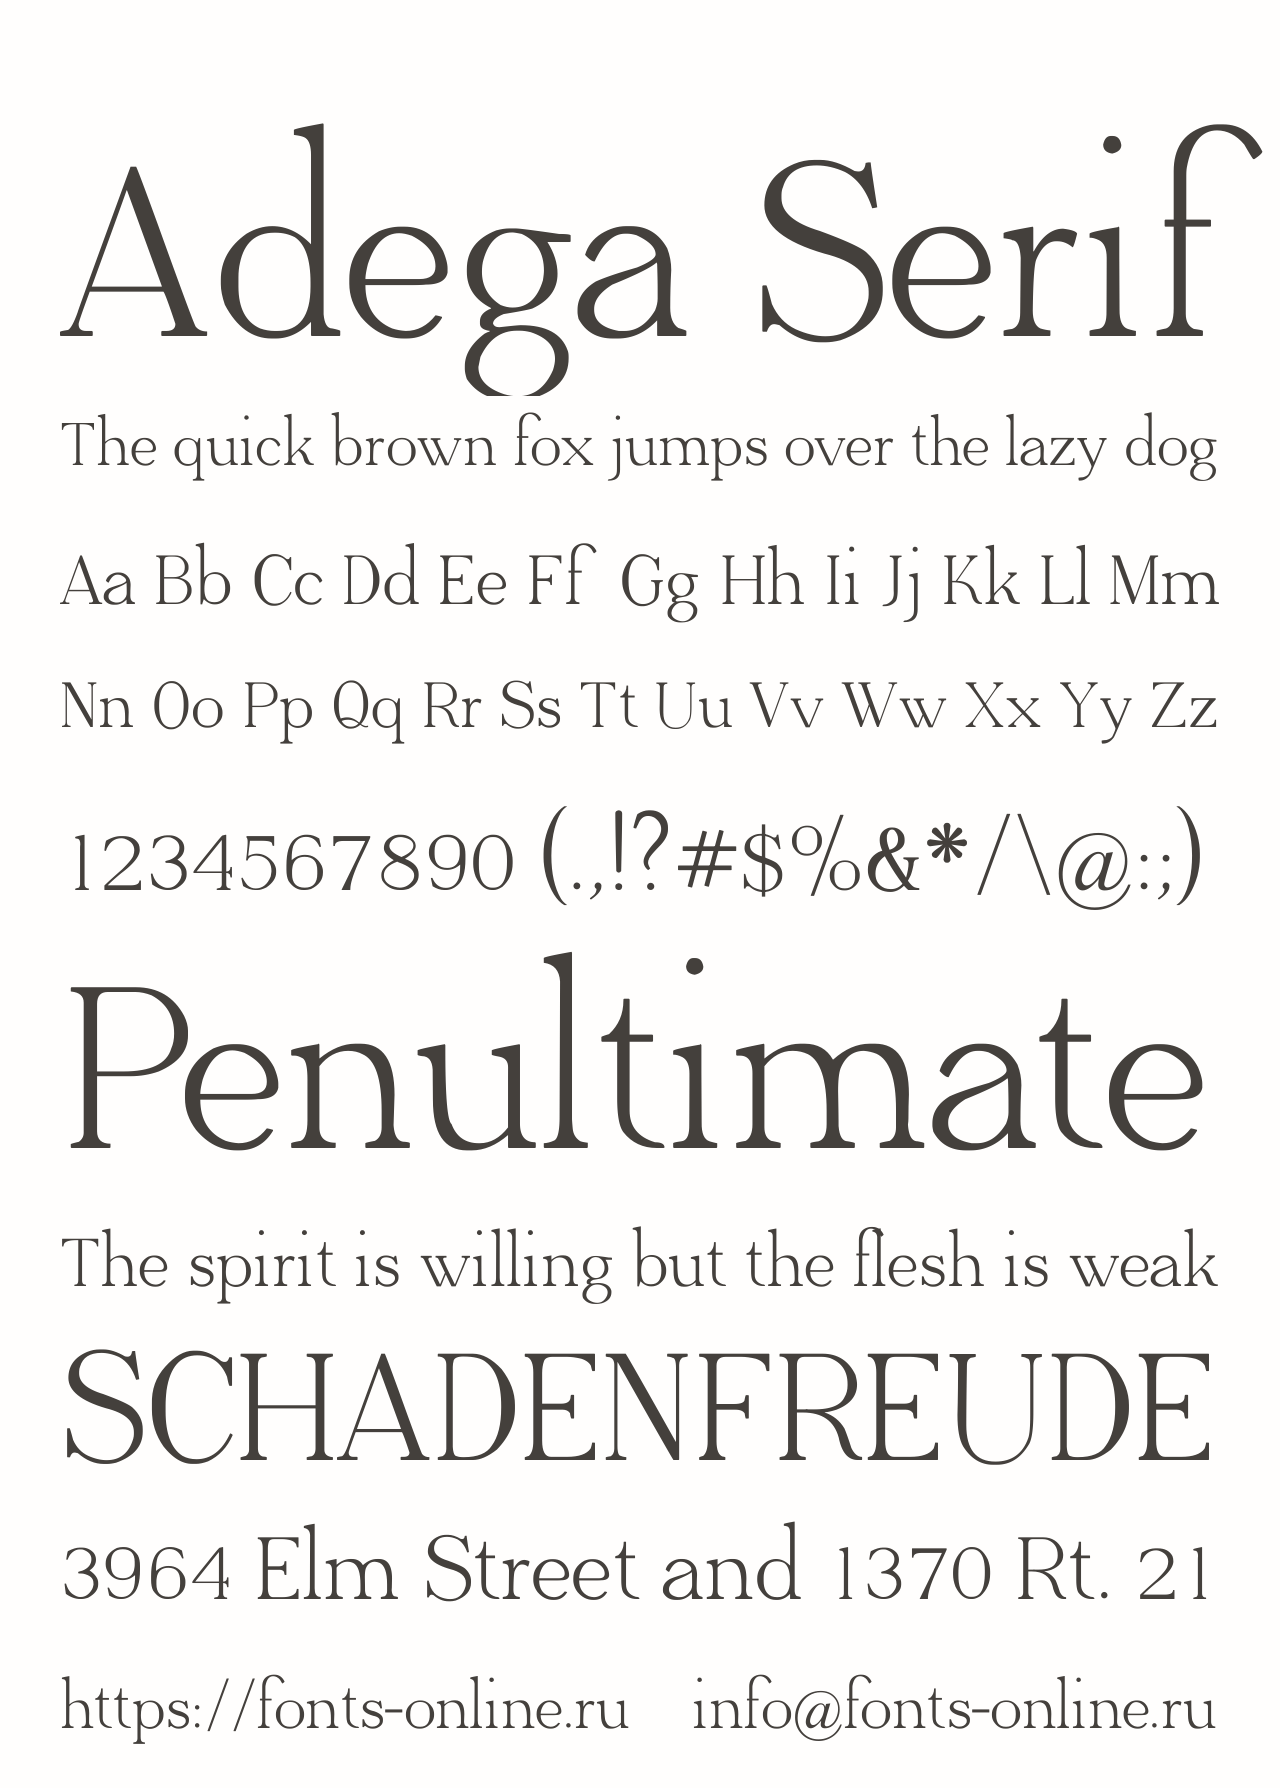 Шрифт Adega Serif